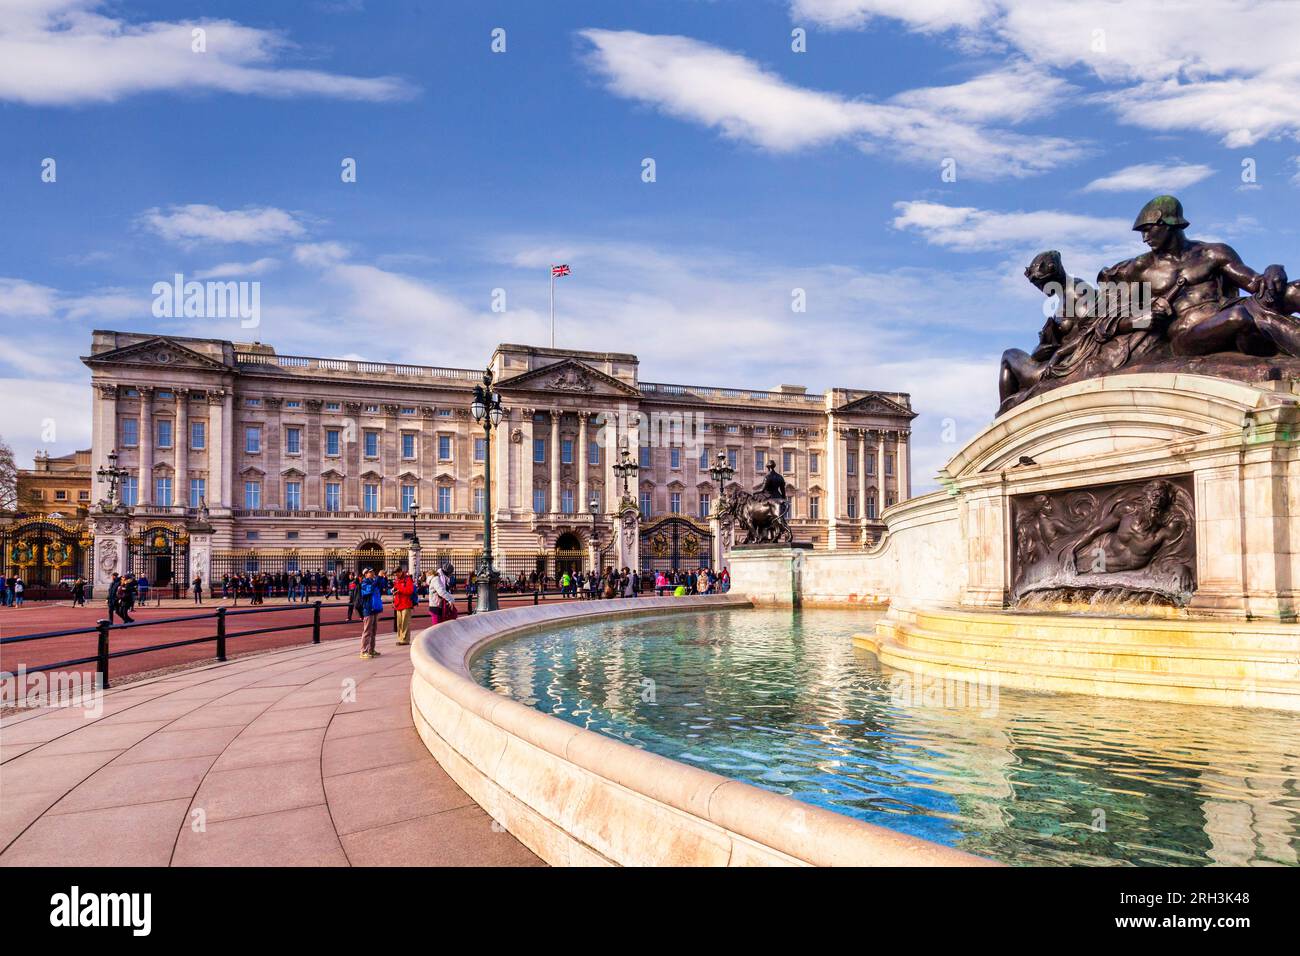 1 mars 2015 : Londres, Royaume-Uni - touristes au palais de Buckingham, résidence officielle du monarque à Londres, vue sur la fontaine. Union Jack survole... Banque D'Images